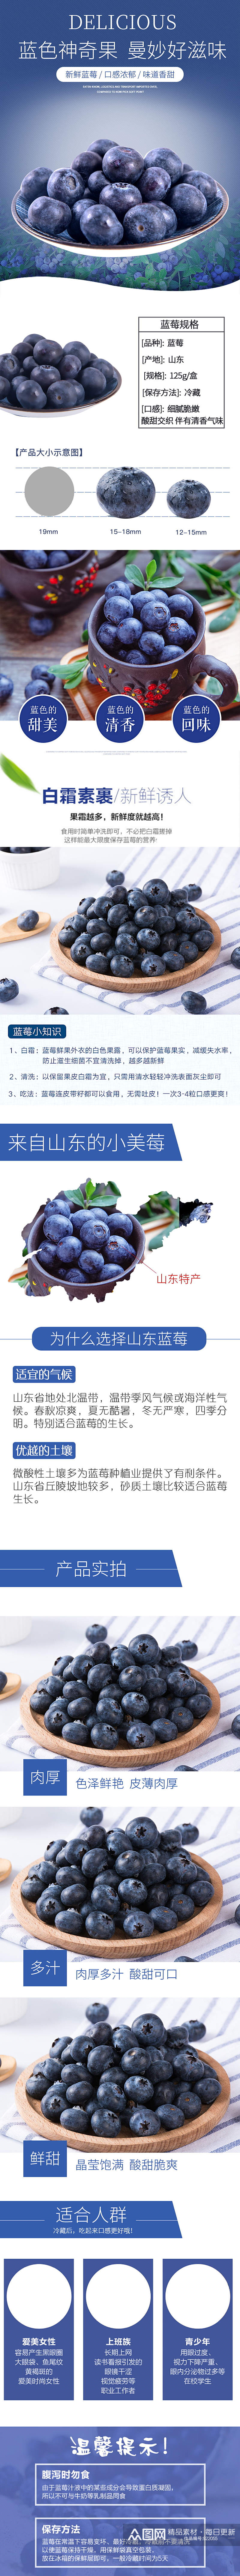 蓝莓淘宝天猫详情页素材